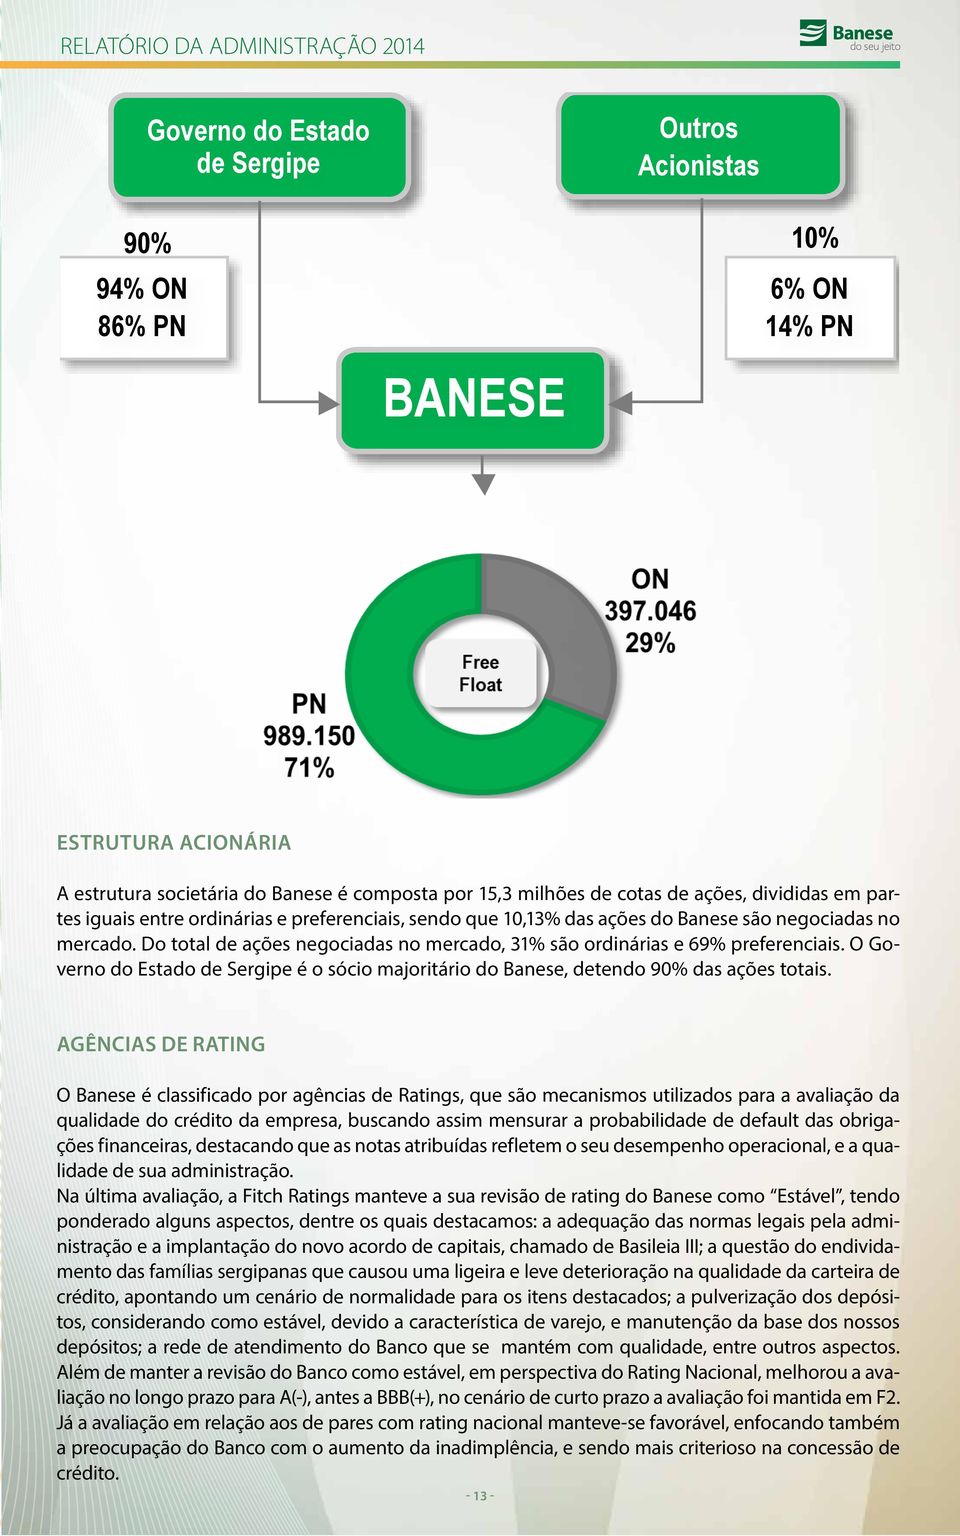 Do total de ações negociadas no mercado, 31% são ordinárias e 69% preferenciais. O Governo do Estado de Sergipe é o sócio majoritário do Banese, detendo 90% das ações totais.